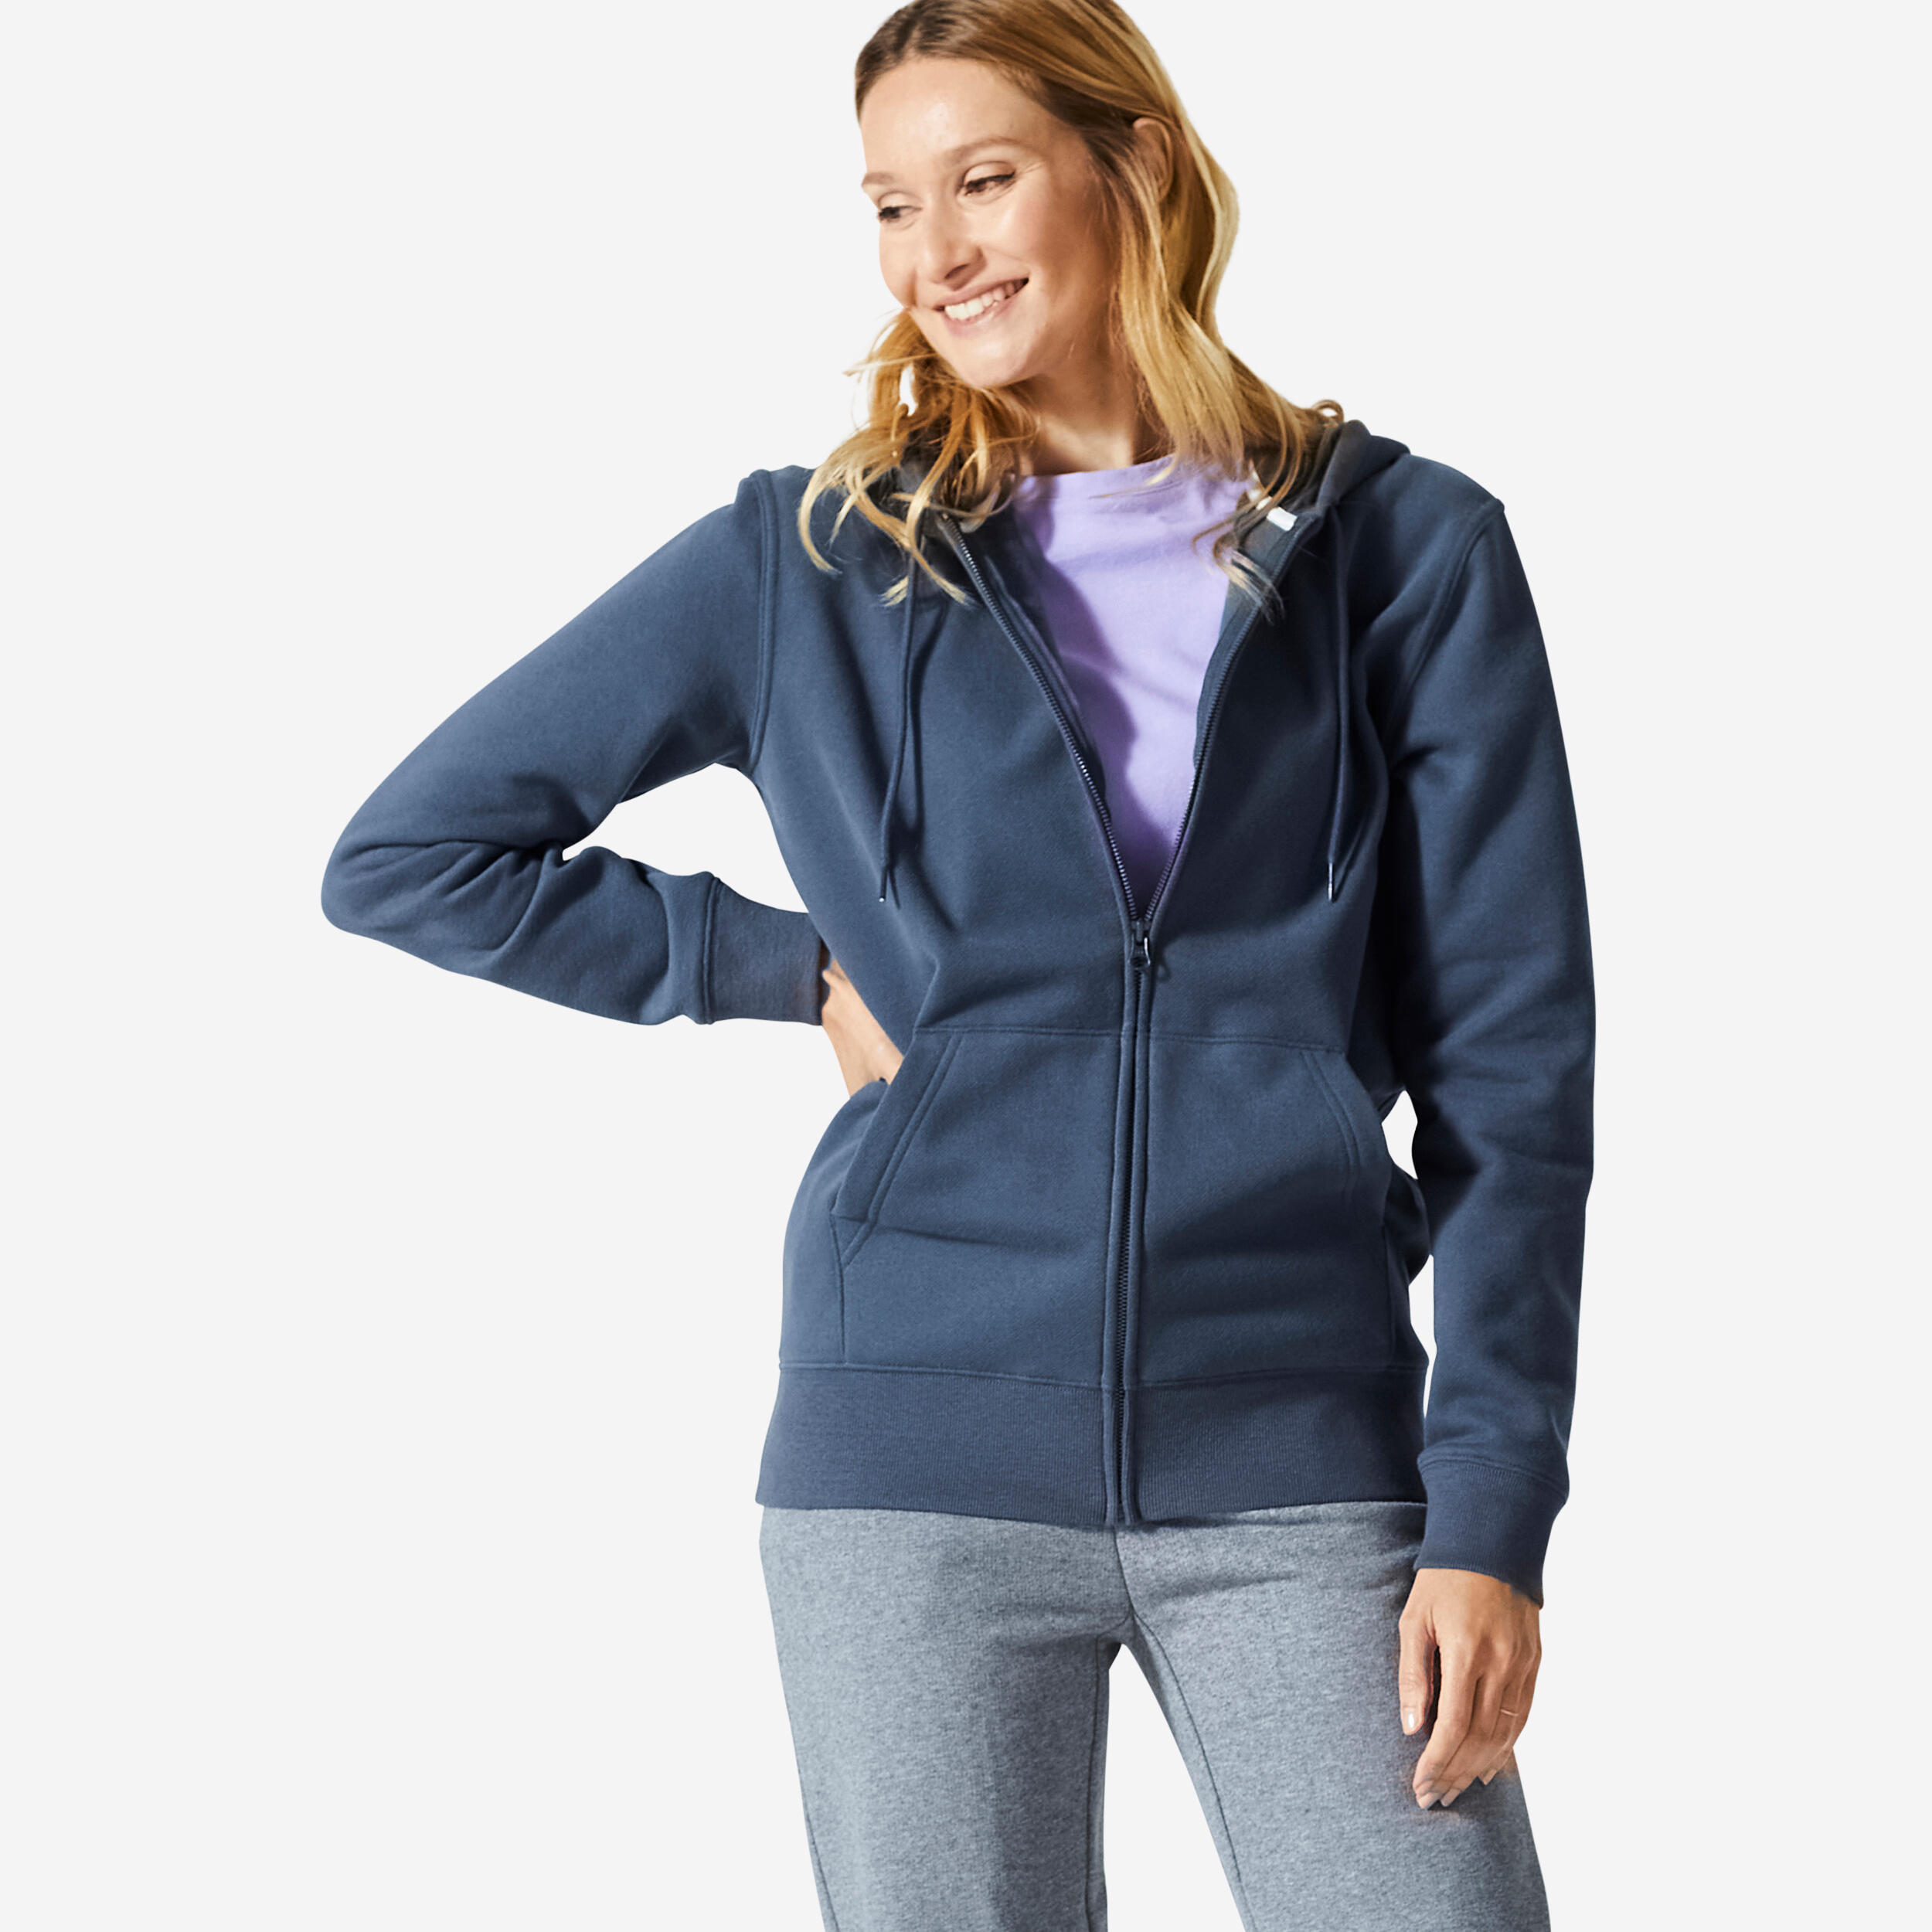 Women's Zip-Up Fitness Sweatshirt 500 Essentials - Abyss Grey DOMYOS ...